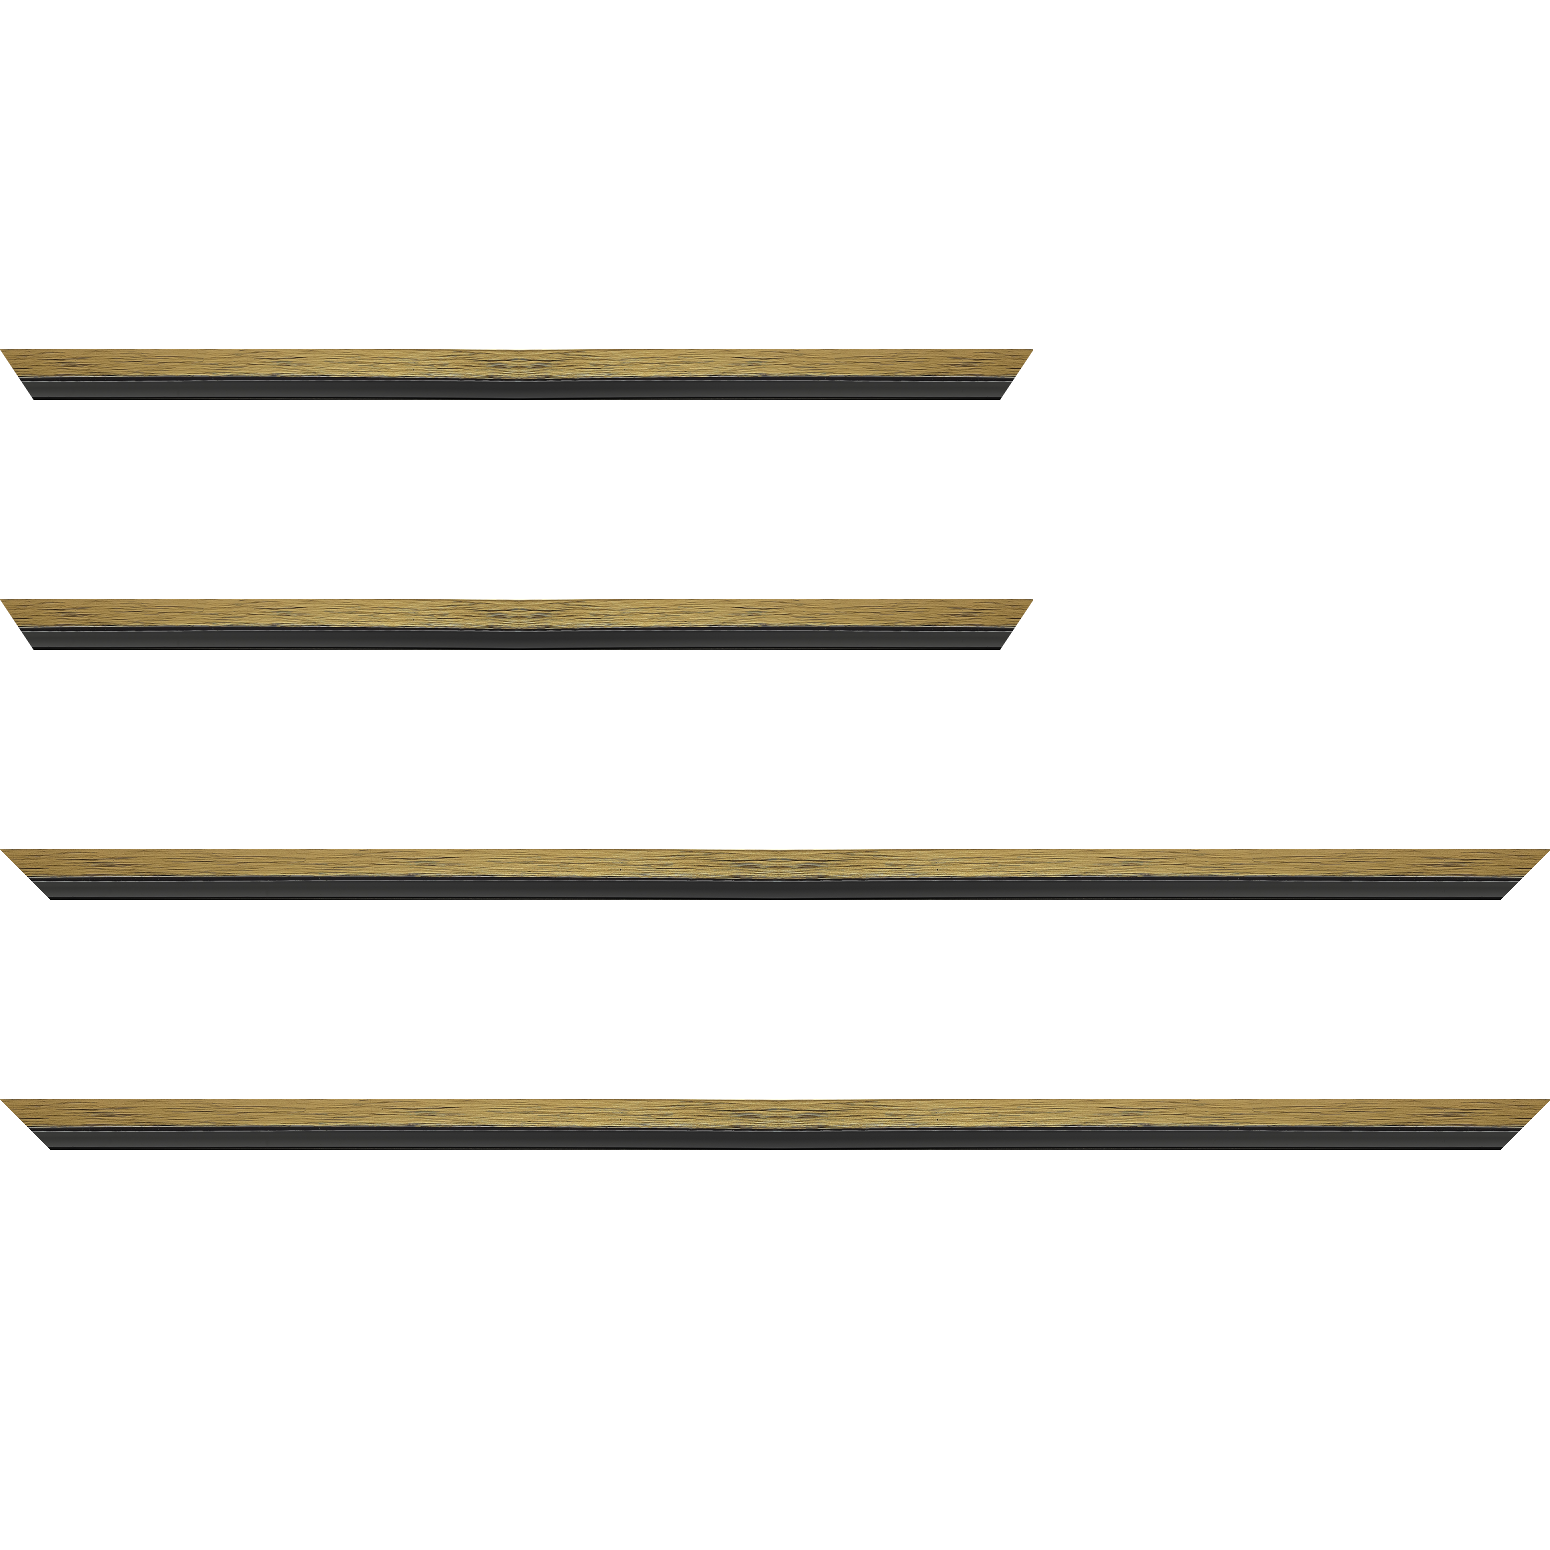 Baguette bois profil plat largeur 1.6cm couleur or contemporain filet noir en retrait de la face du cadre de 6mm assurant un effet très original - 35x24